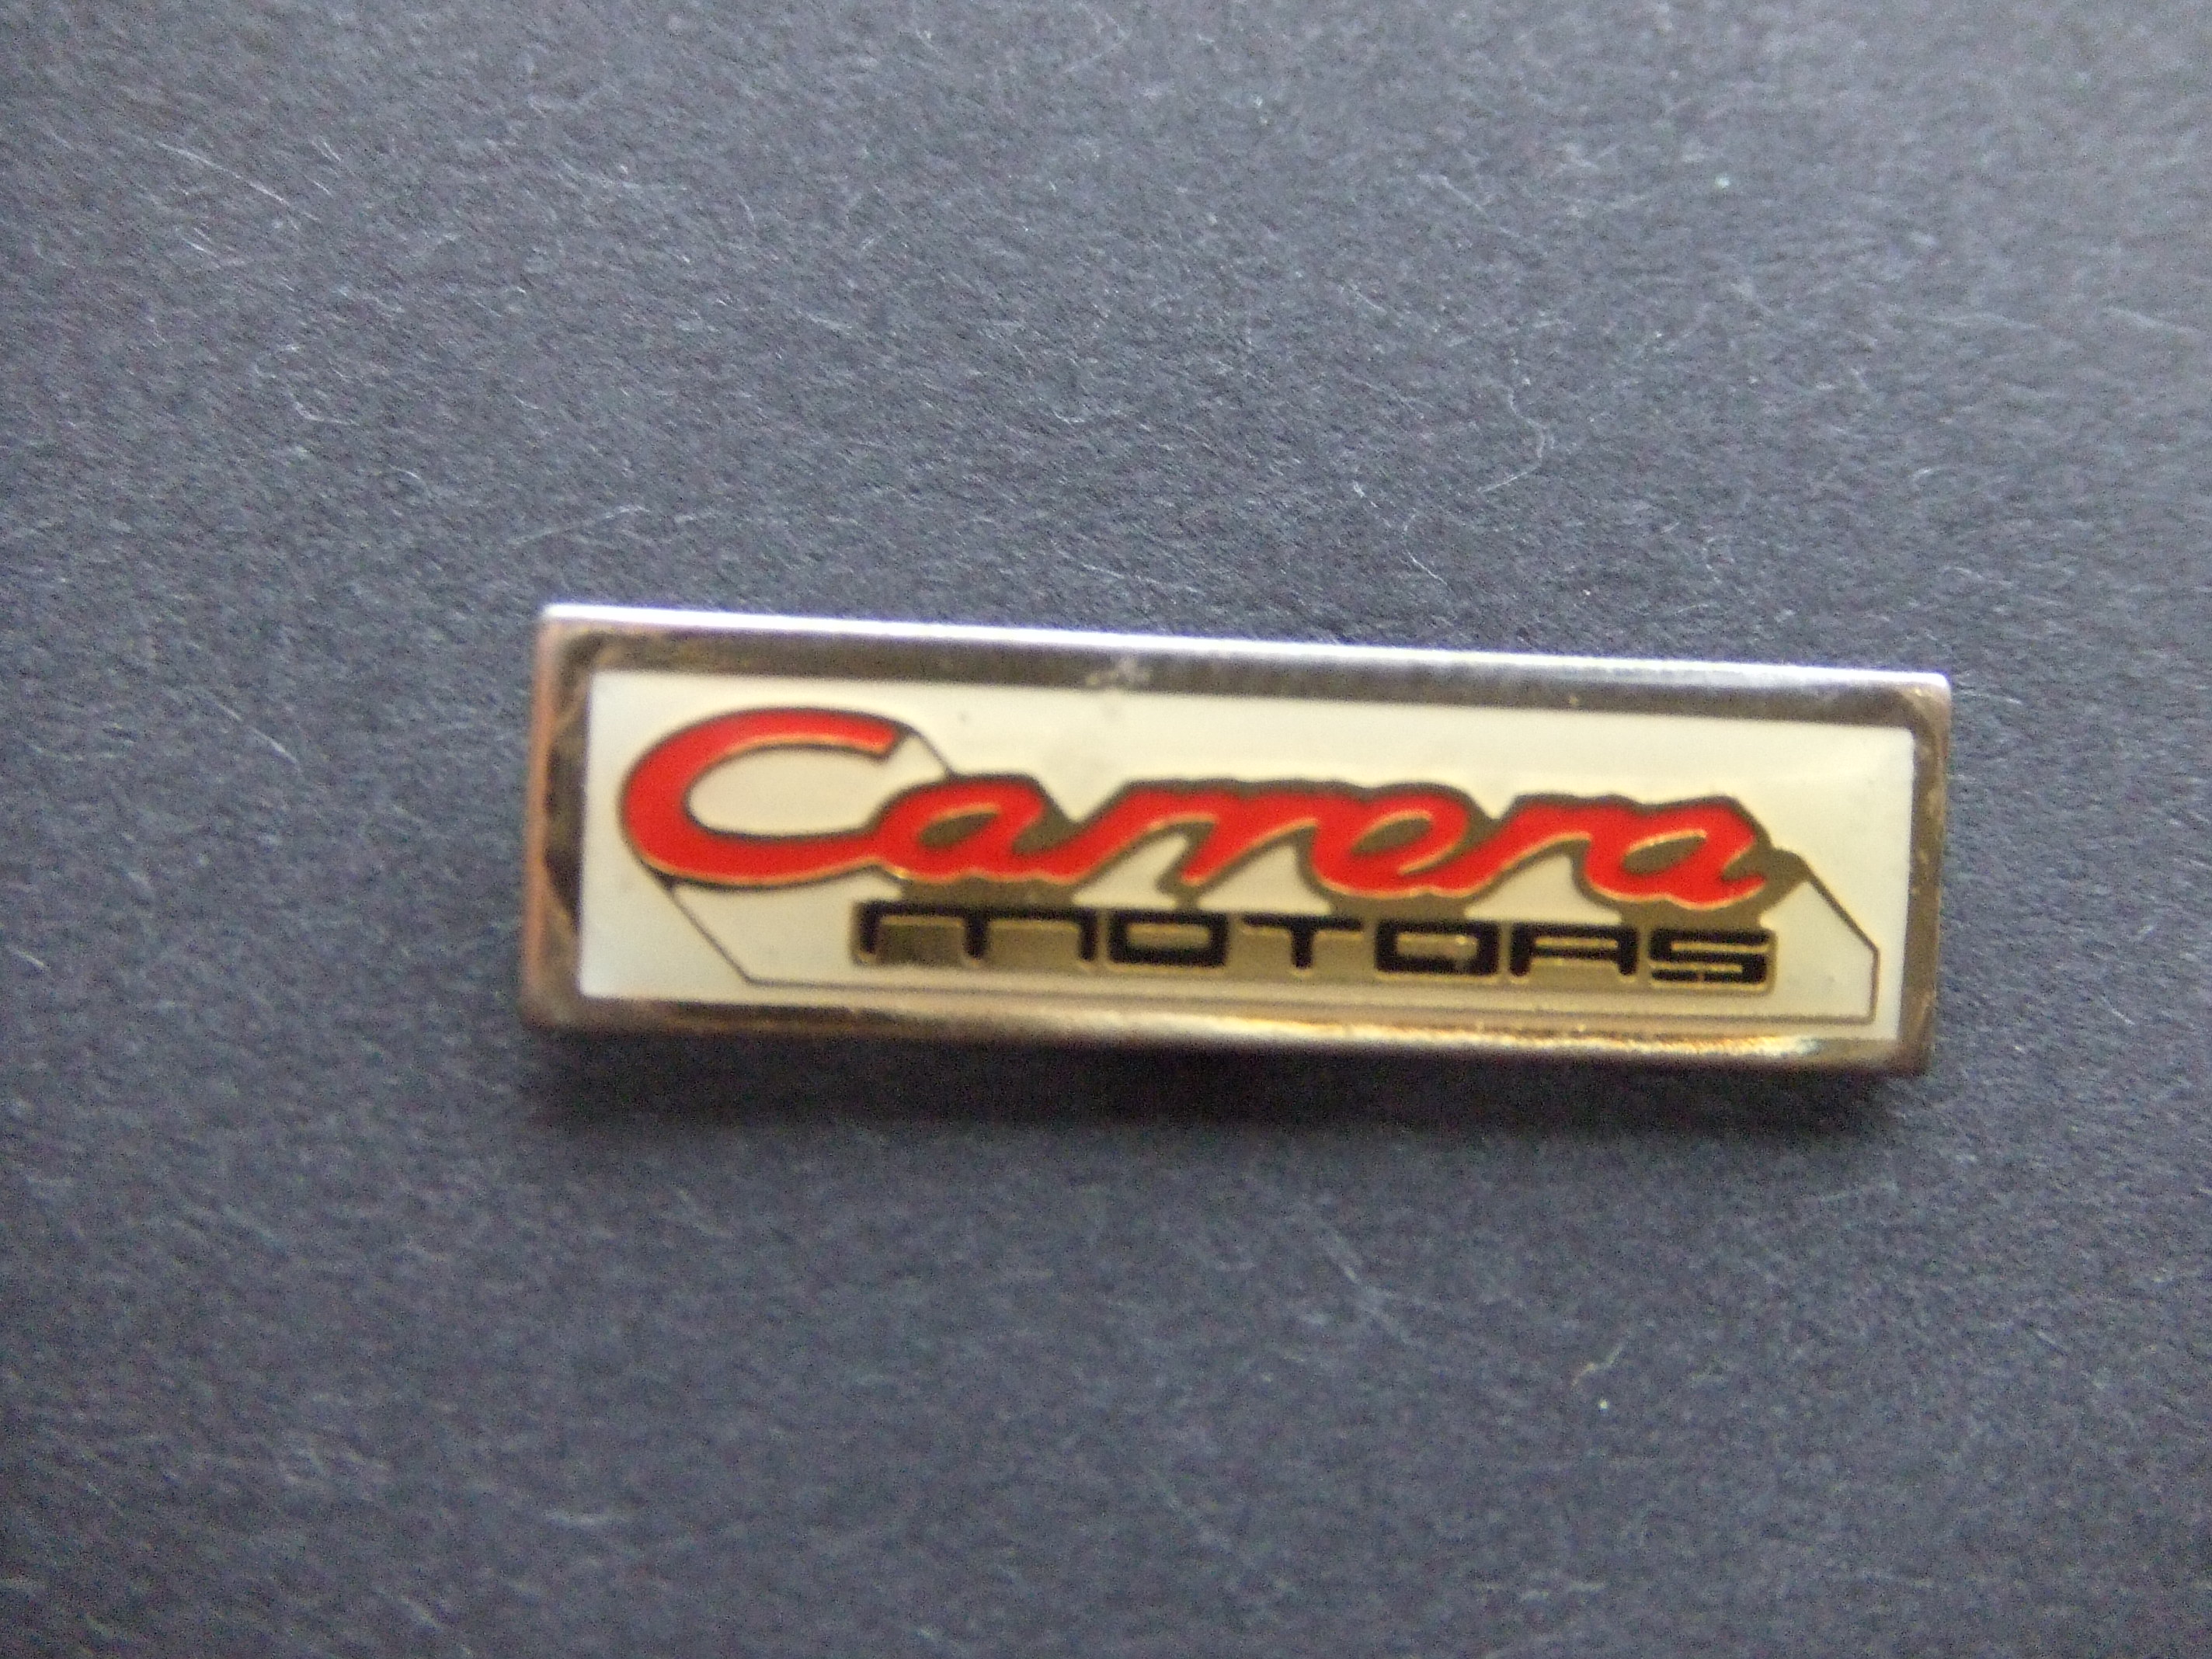 Carrera motors Porsche logo